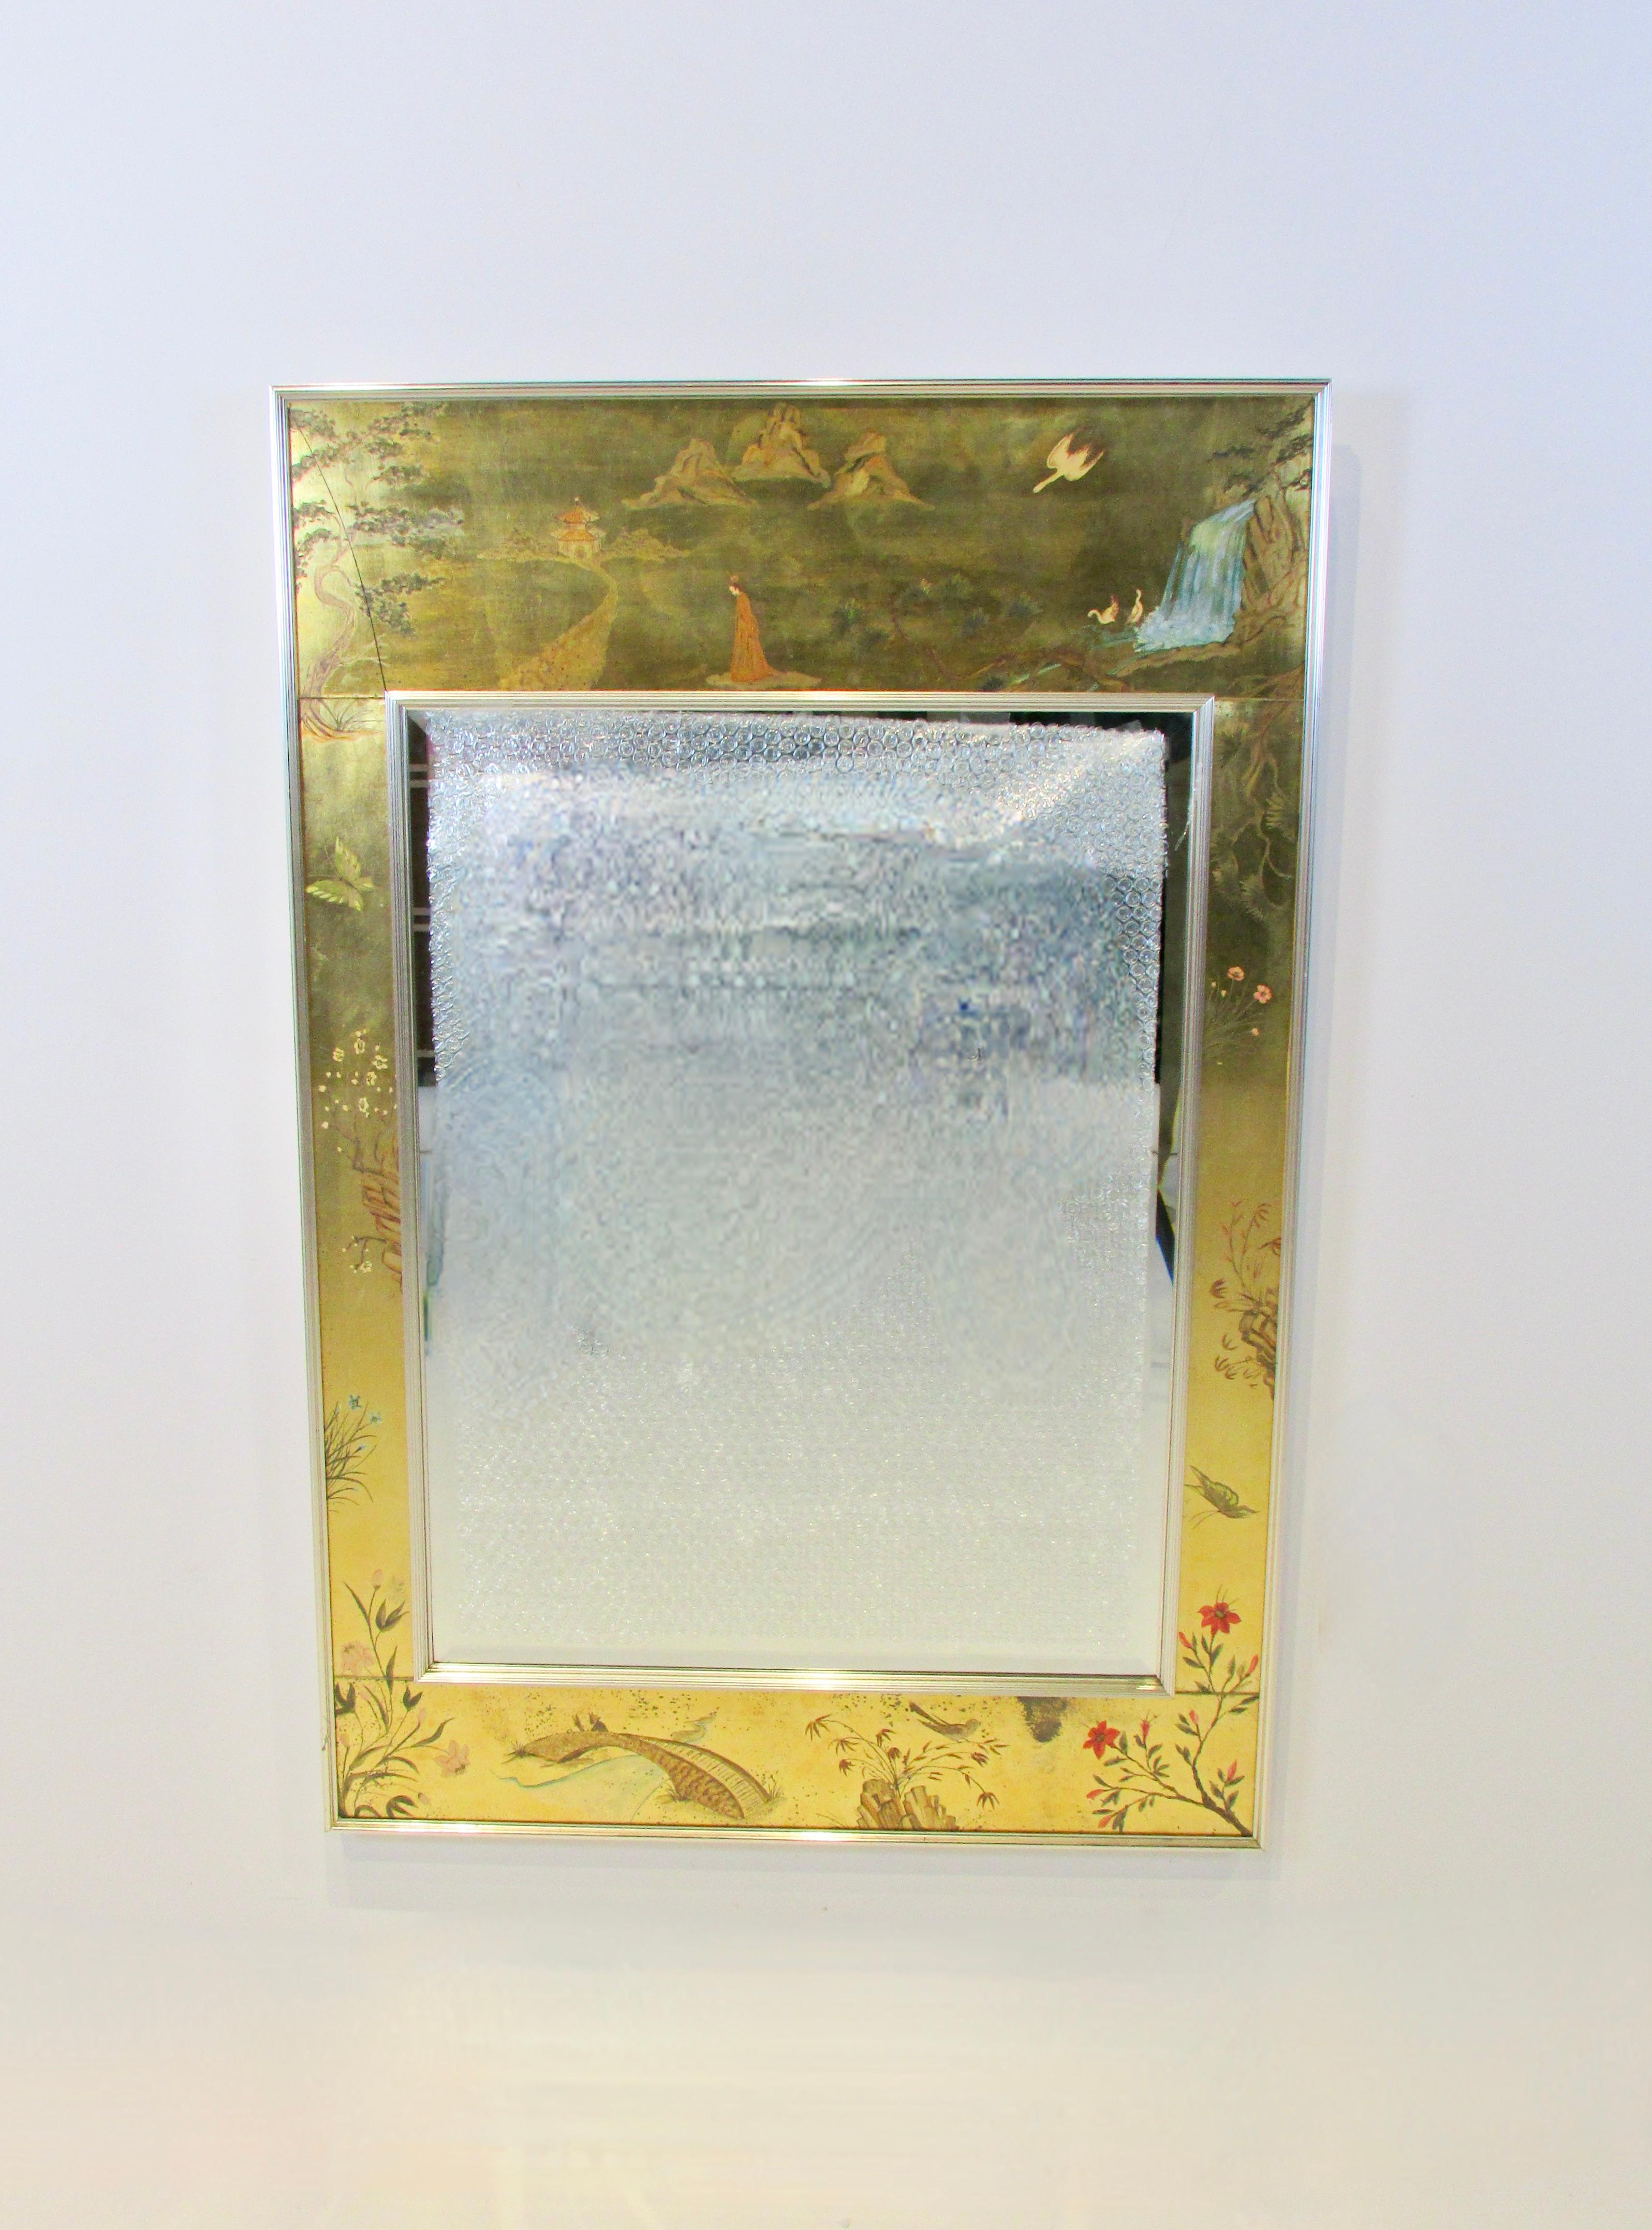 Miroir mural avec décoration asiatique sur fond de feuilles d'or. Couleurs vives et lumineuses, miroir clair. Il y a une fissure dans la feuille d'or dans le coin supérieur gauche derrière le verre extérieur.